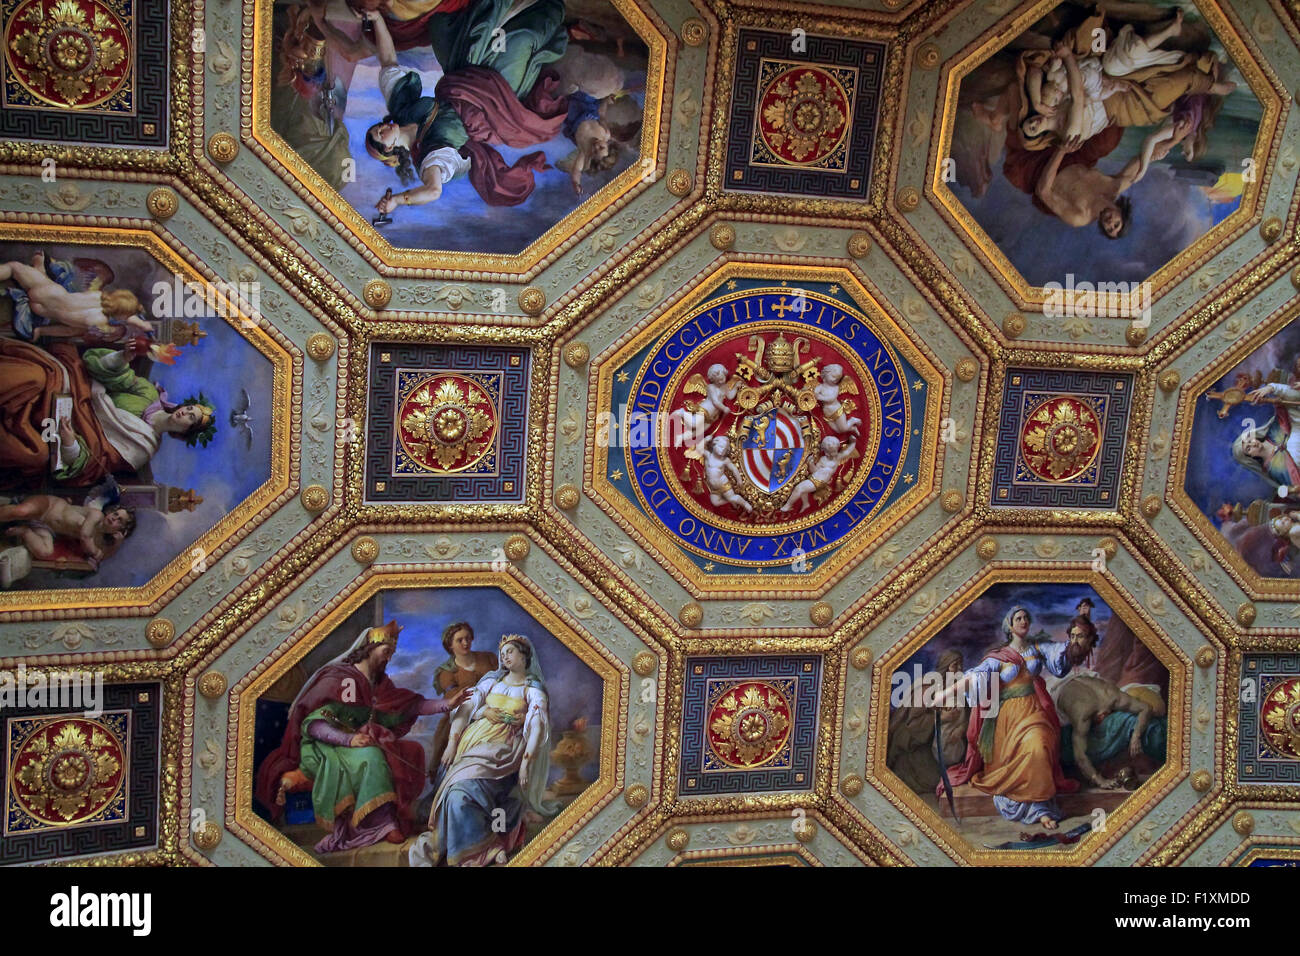 Au plafond, la salle de l'Immaculée Conception. Musées du Vatican. Le Vatican, Rome, Italie. Banque D'Images